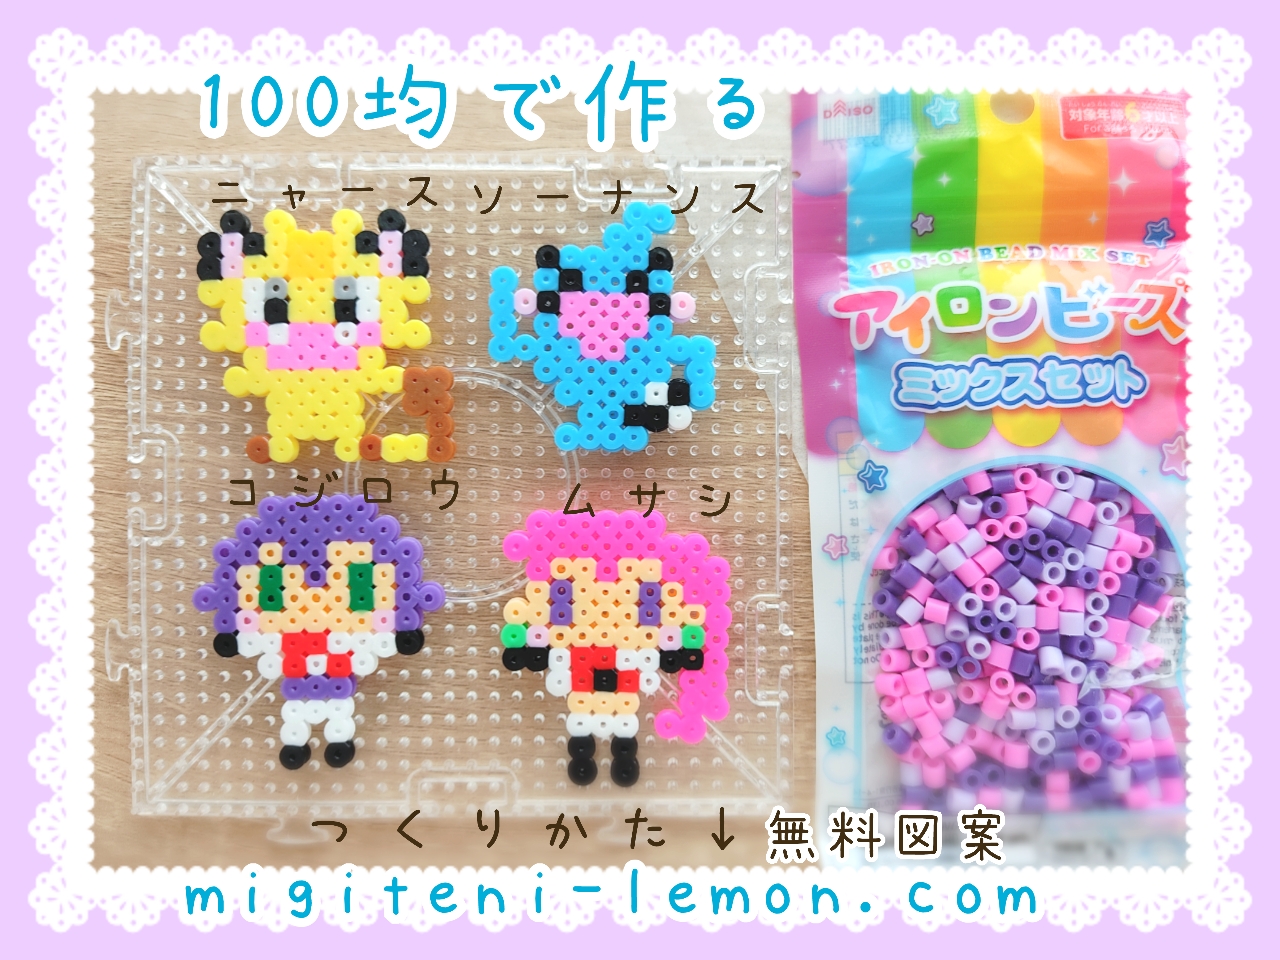 musashi-kojiro-nyasu-meowth-sonansu-wobbuffet-rocket-pokemon-kawaii-anipoke-handmade-iron-beads-free-zuan-daiso-small-square-100kin-kids